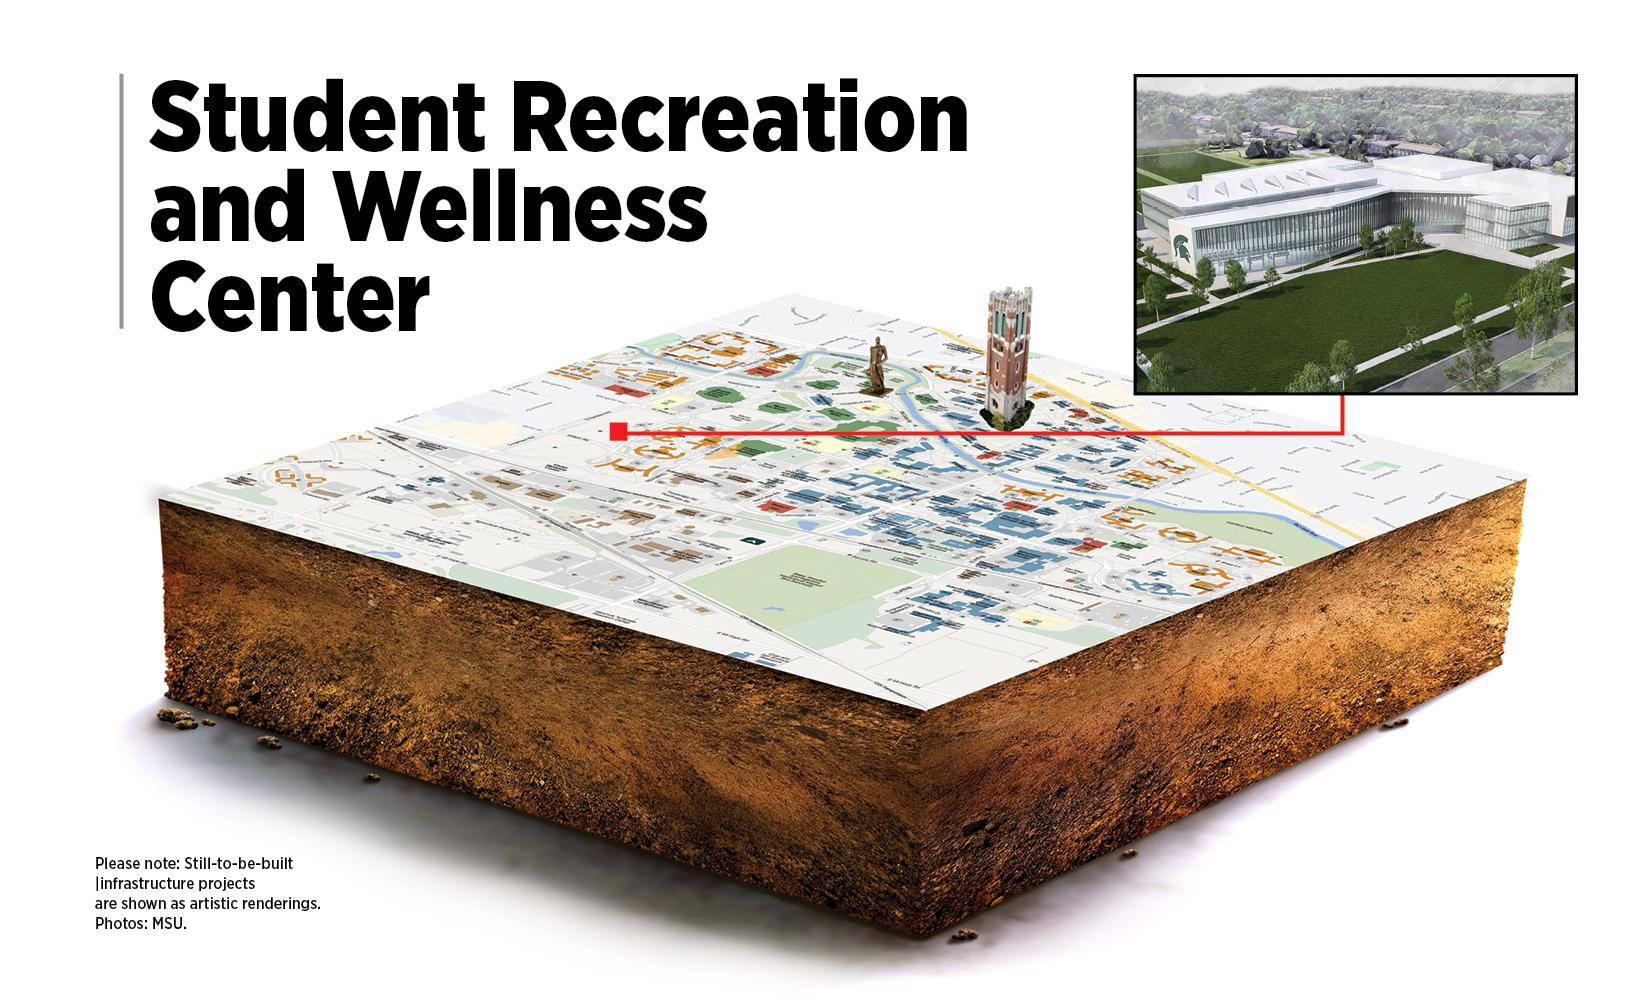 Wellness Center Map